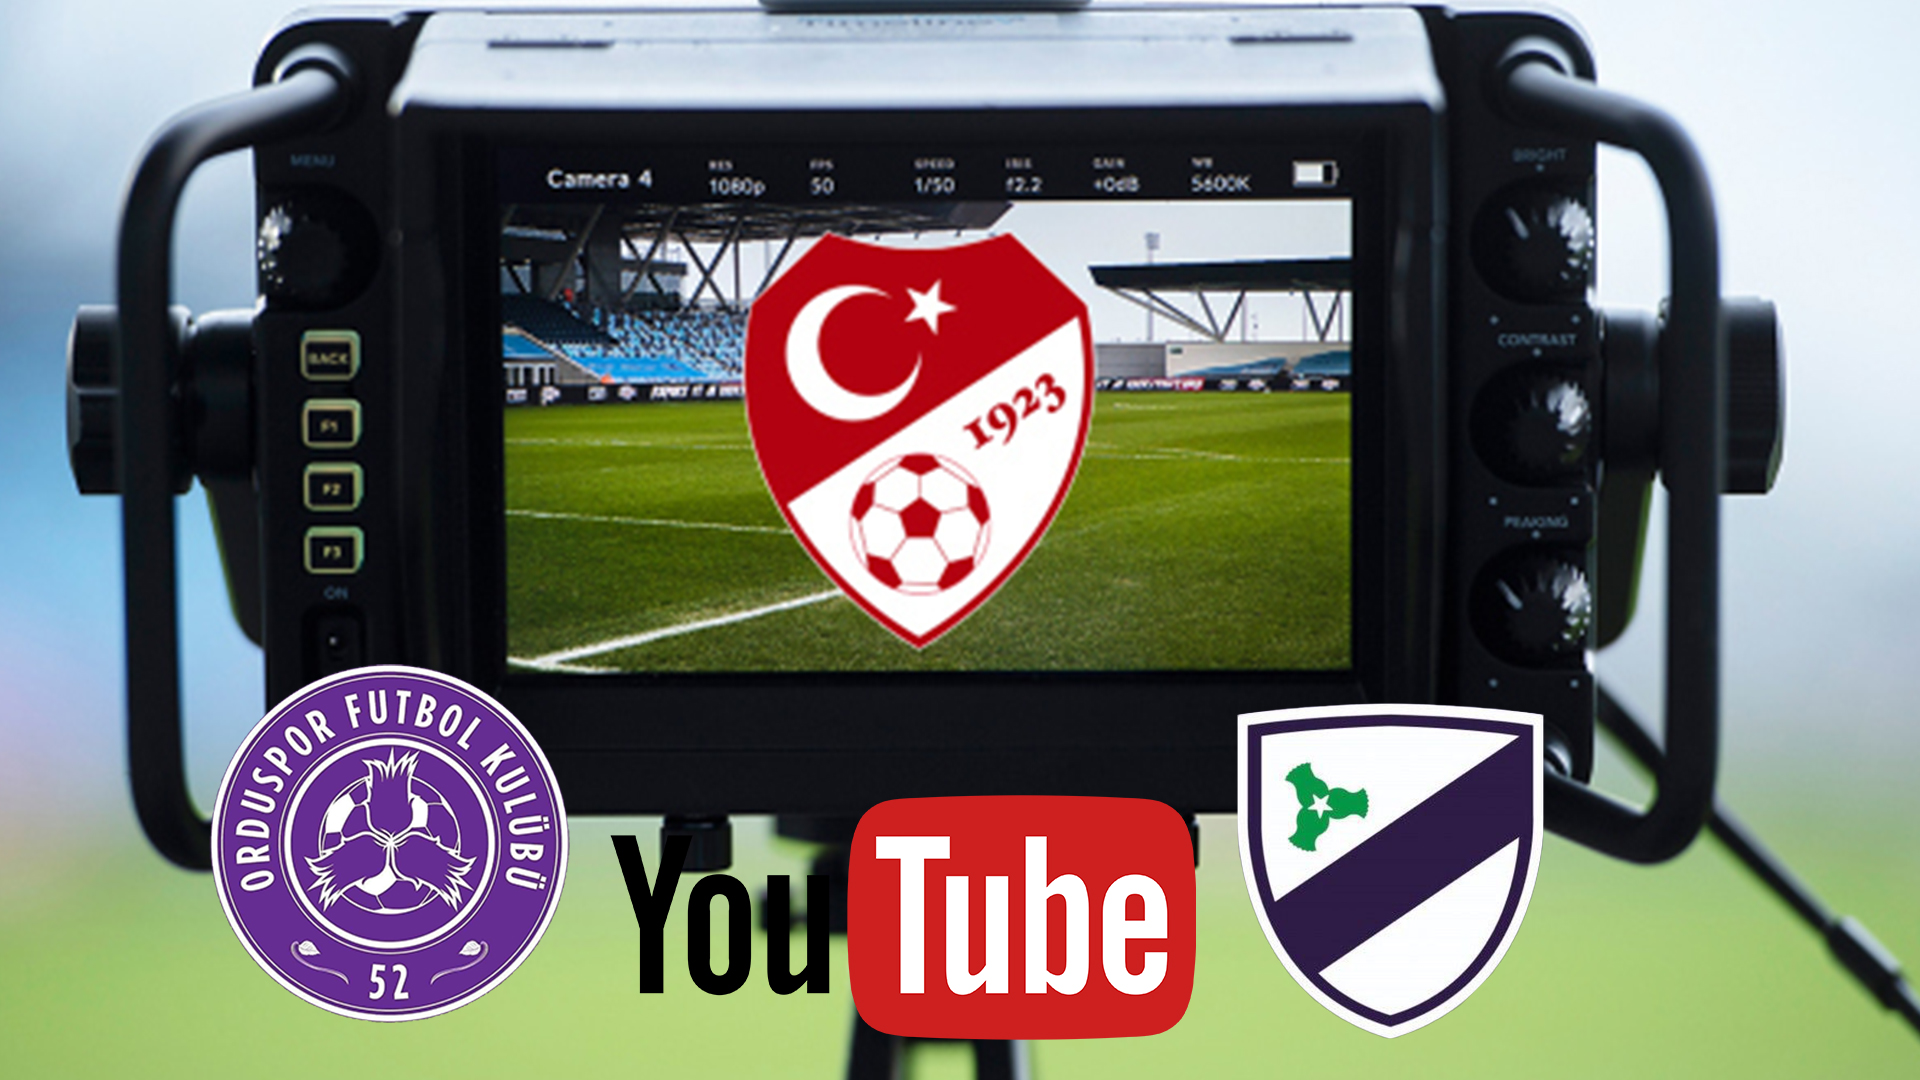  52 Orduspor Futbol Kulübü ve Orduspor 1967 A.Ş. Maçları TFF Youtube Kanalından Yayınlanacak